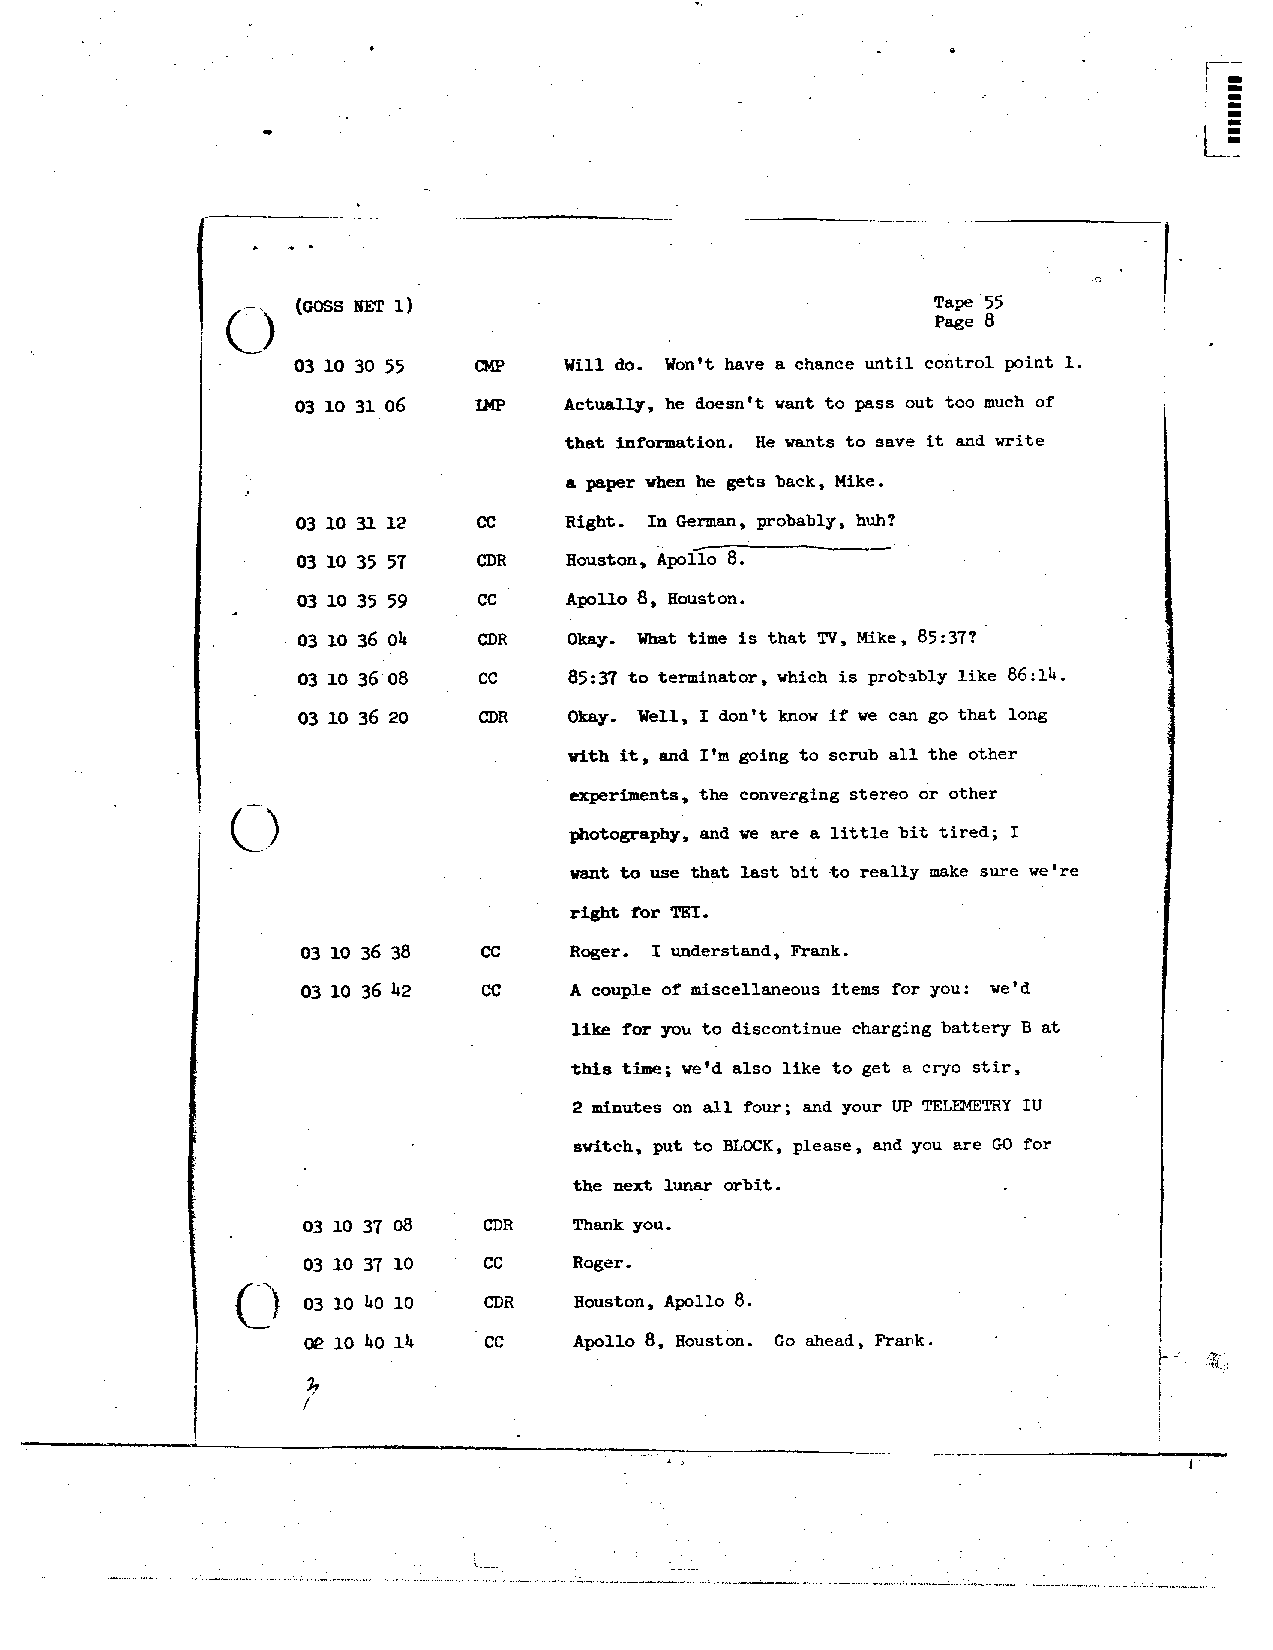 Page 443 of Apollo 8’s original transcript